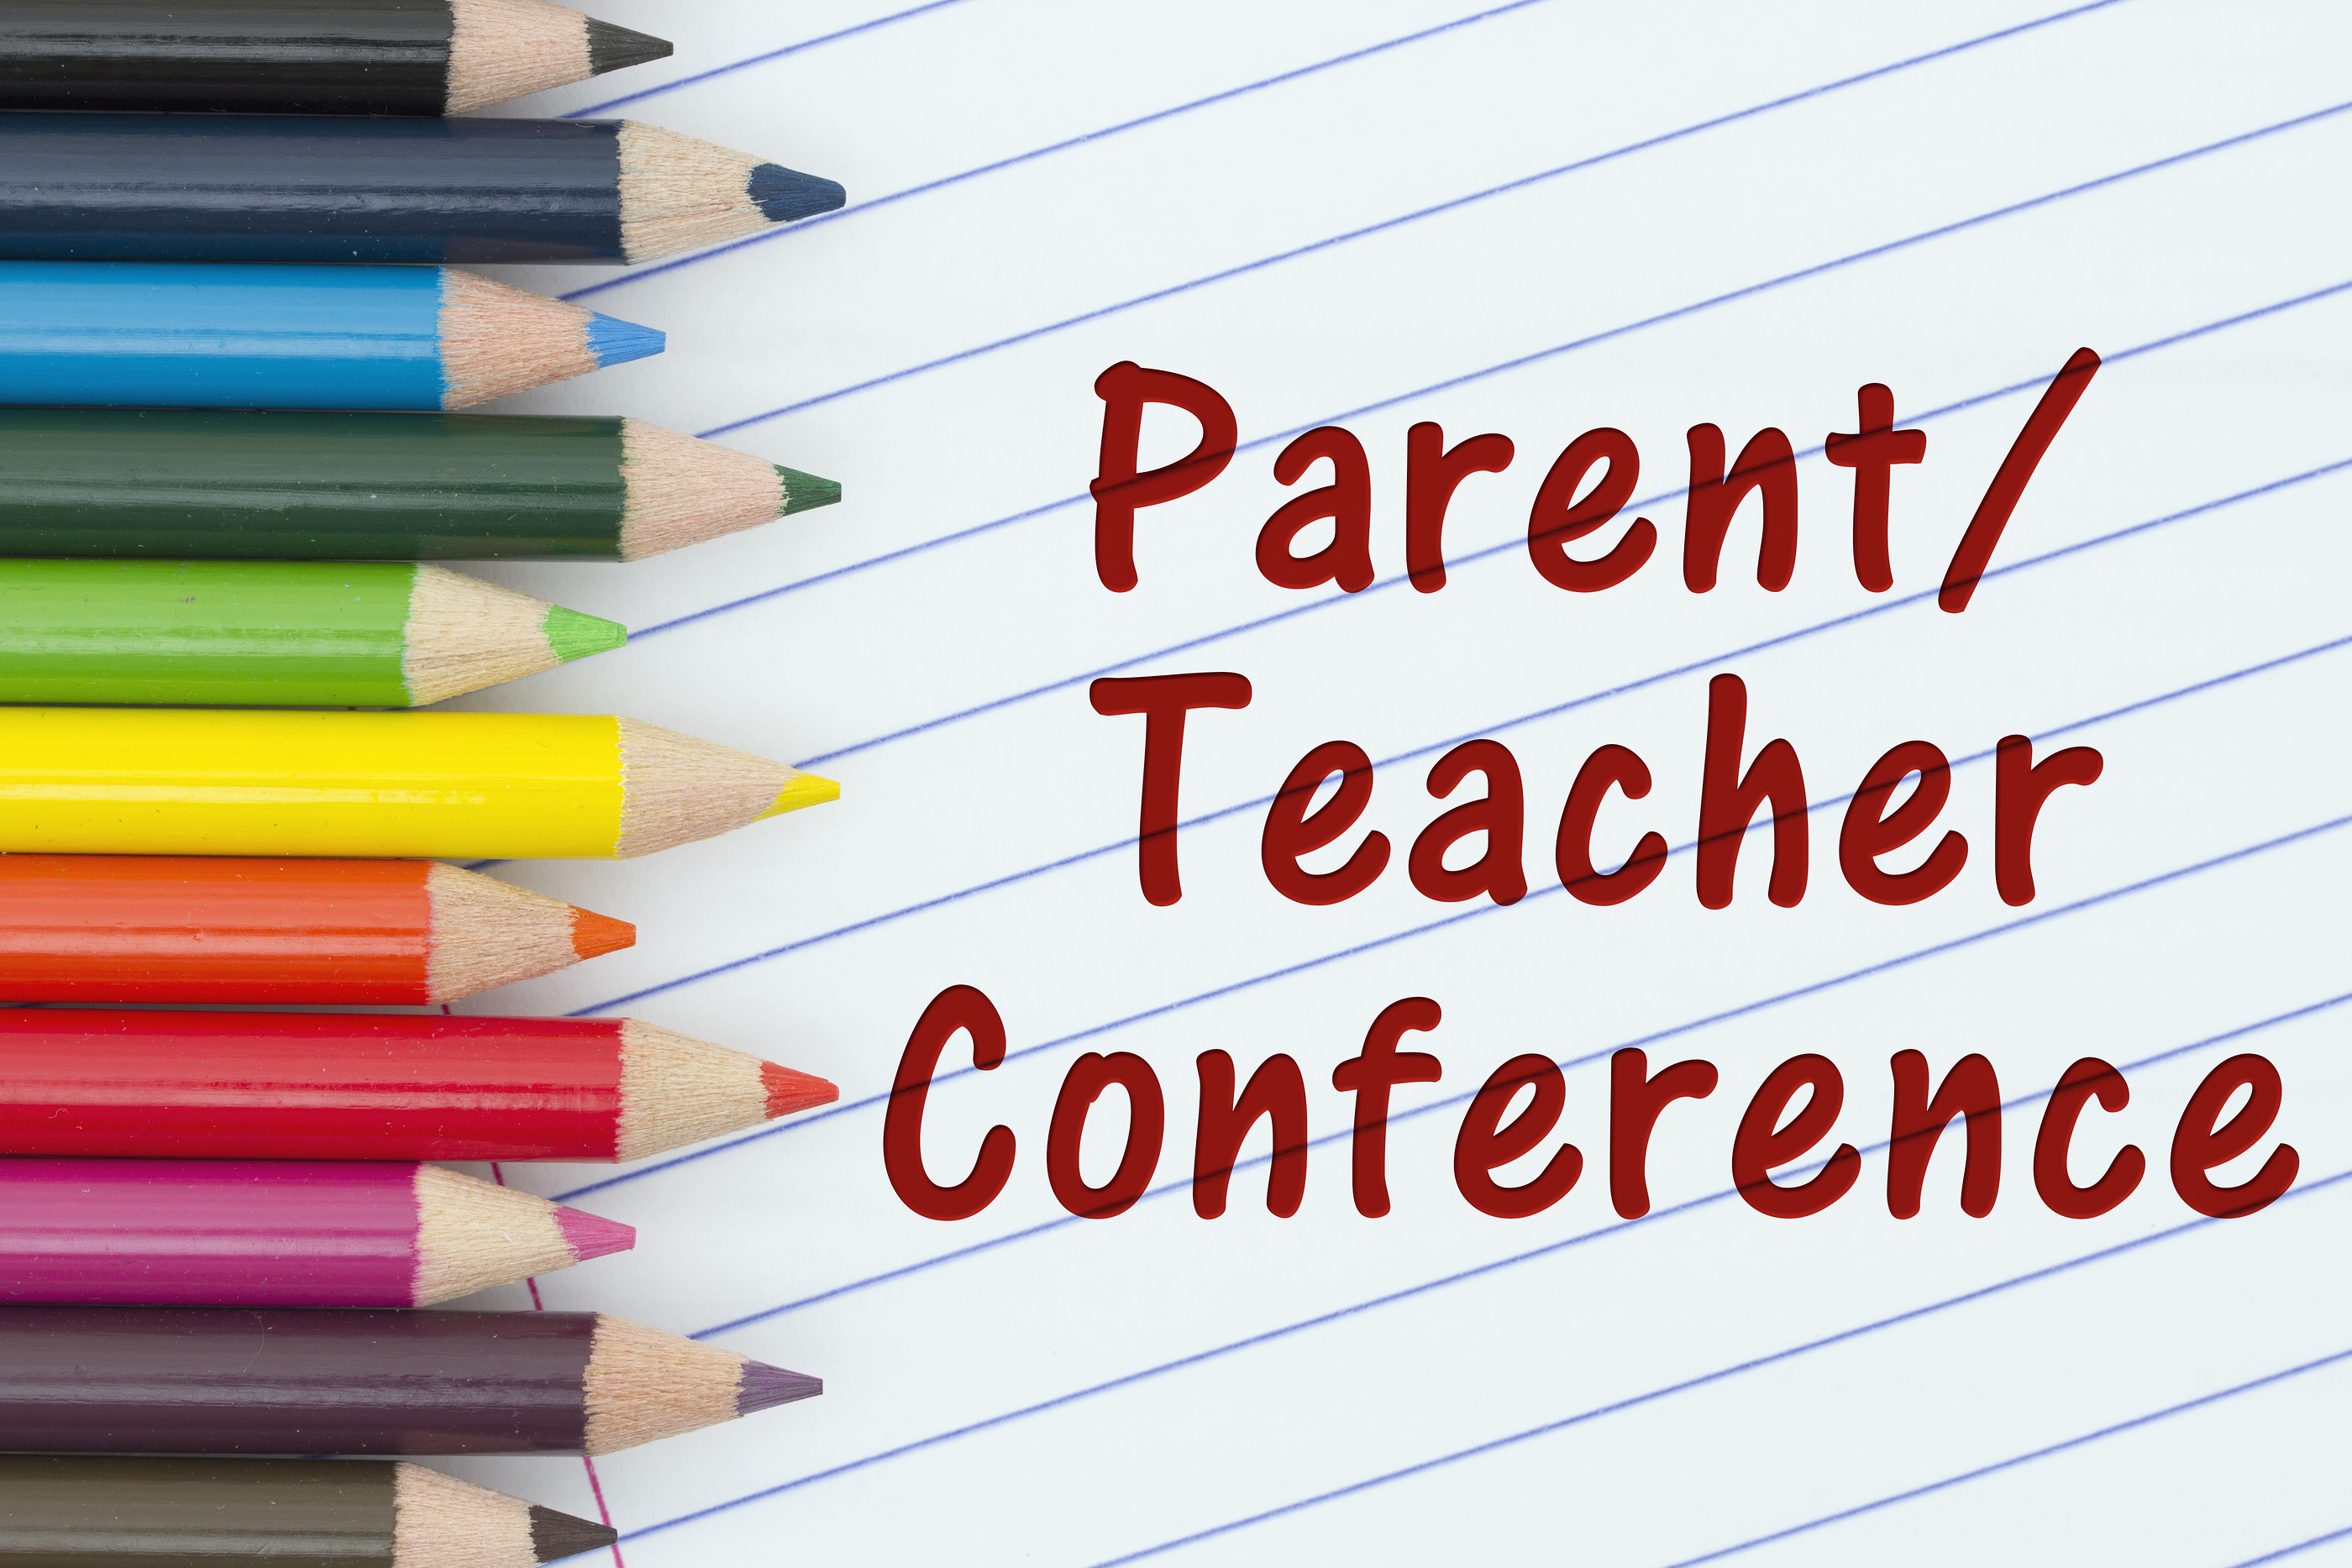 Parent Teacher Conferences 10/15 & 10/17